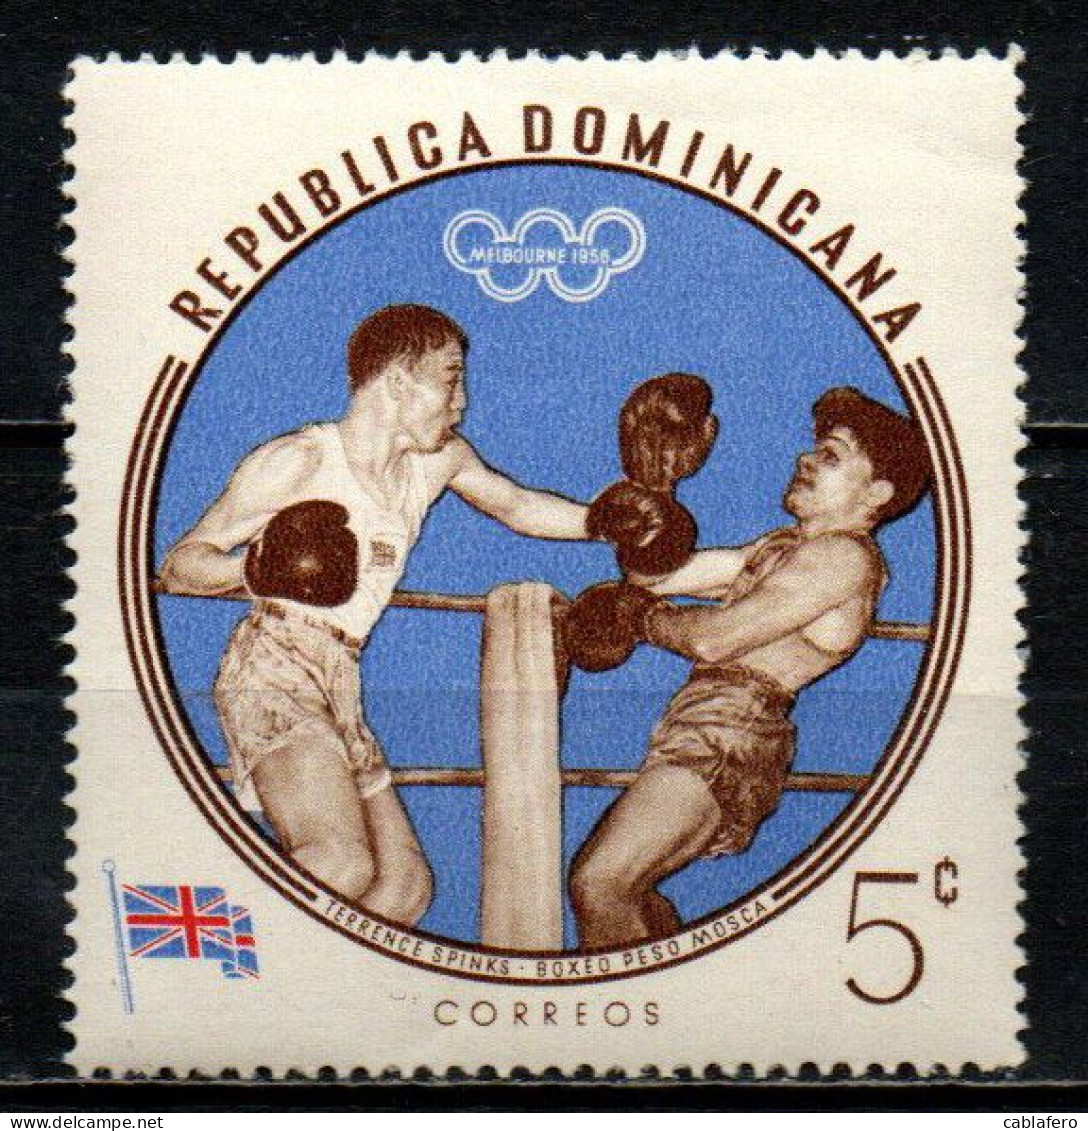 REPUBBLICA DOMENICANA - 1960 - TERRENCE SPINKS - OLIMPIADI DI MELBOURNE -MNH - Repubblica Domenicana